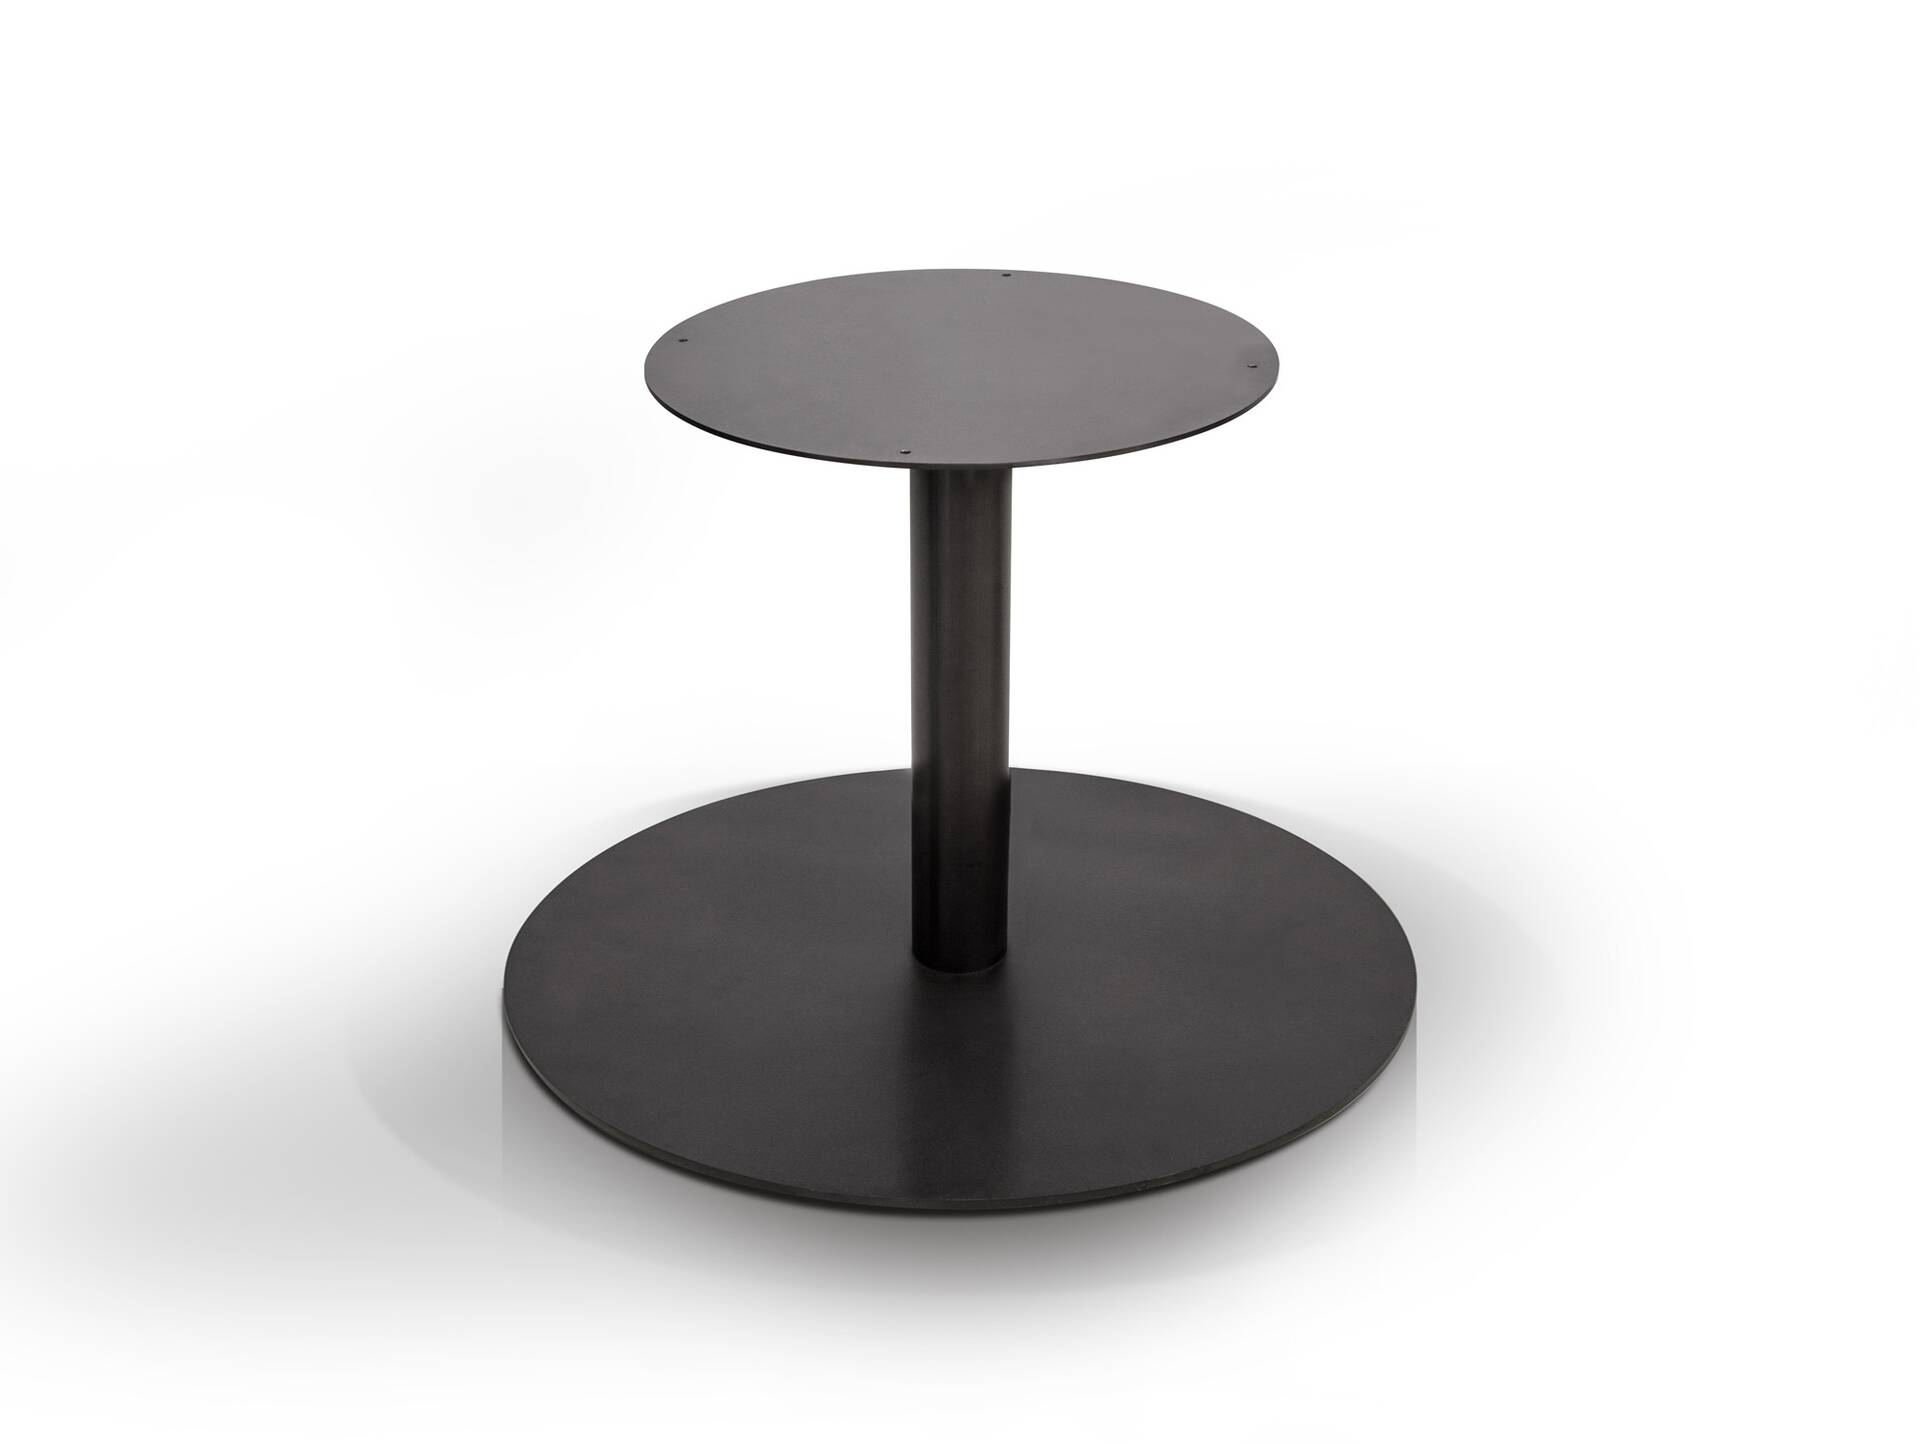 Tischgestell für GASTRO Esstisch rund, Material Stahl, schwarz 70 cm